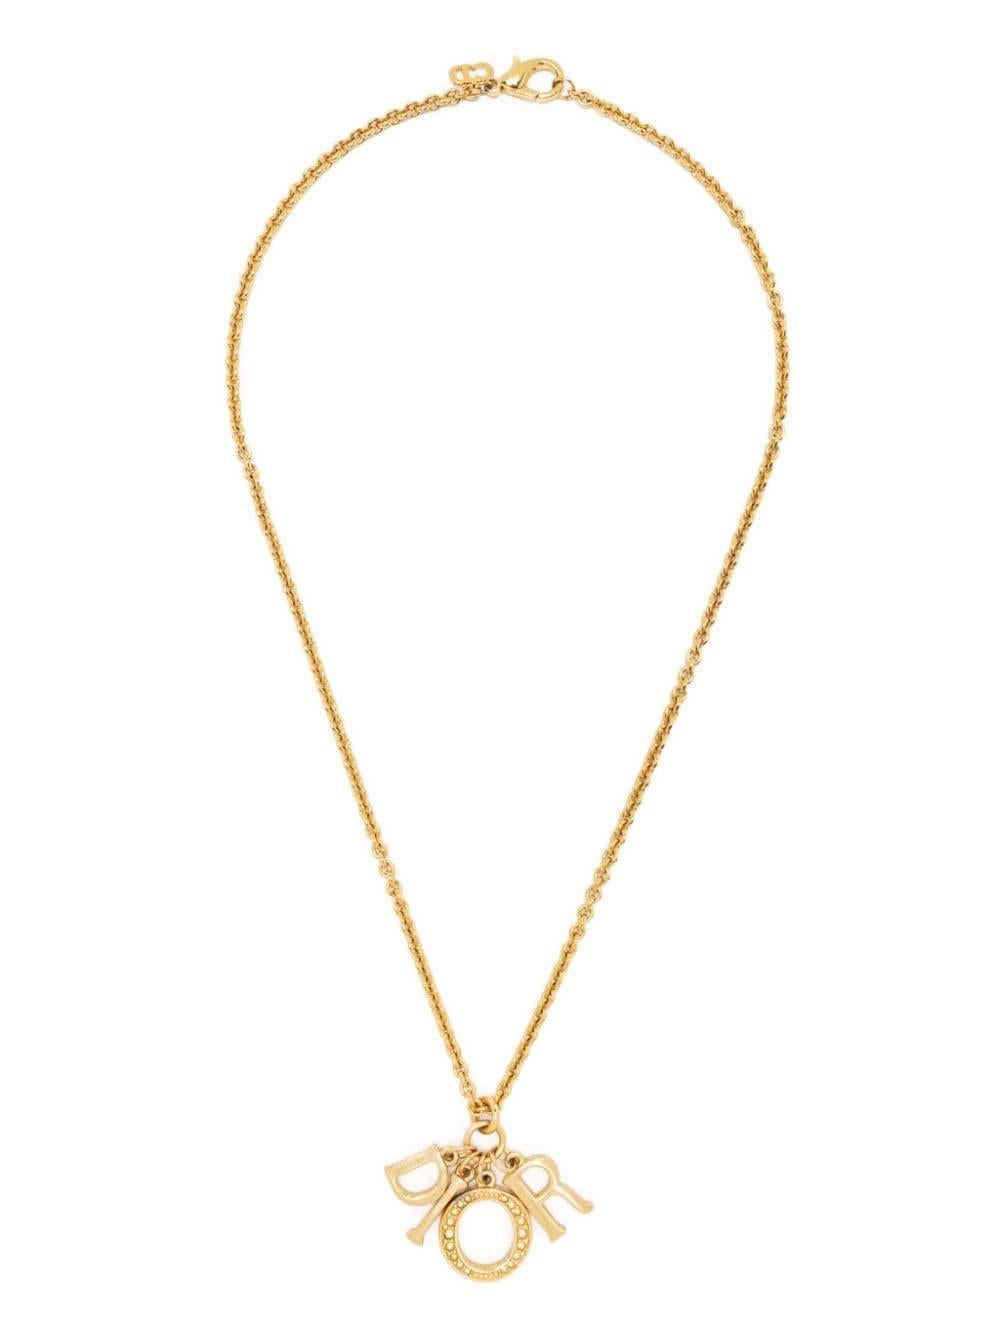 Goldfarbene, polierte Christian Dior-Halskette mit Logo-Buchstaben-Anhänger, Strassverzierung, signiertem CD-Logo-Charme, Kabelkette und Karabinerverschluss.
Länge 20,1 Zoll (51 cm)
Anhänger Länge 1.5in ( 4cm)
CIRCA: 2000er Jahre
In gutem